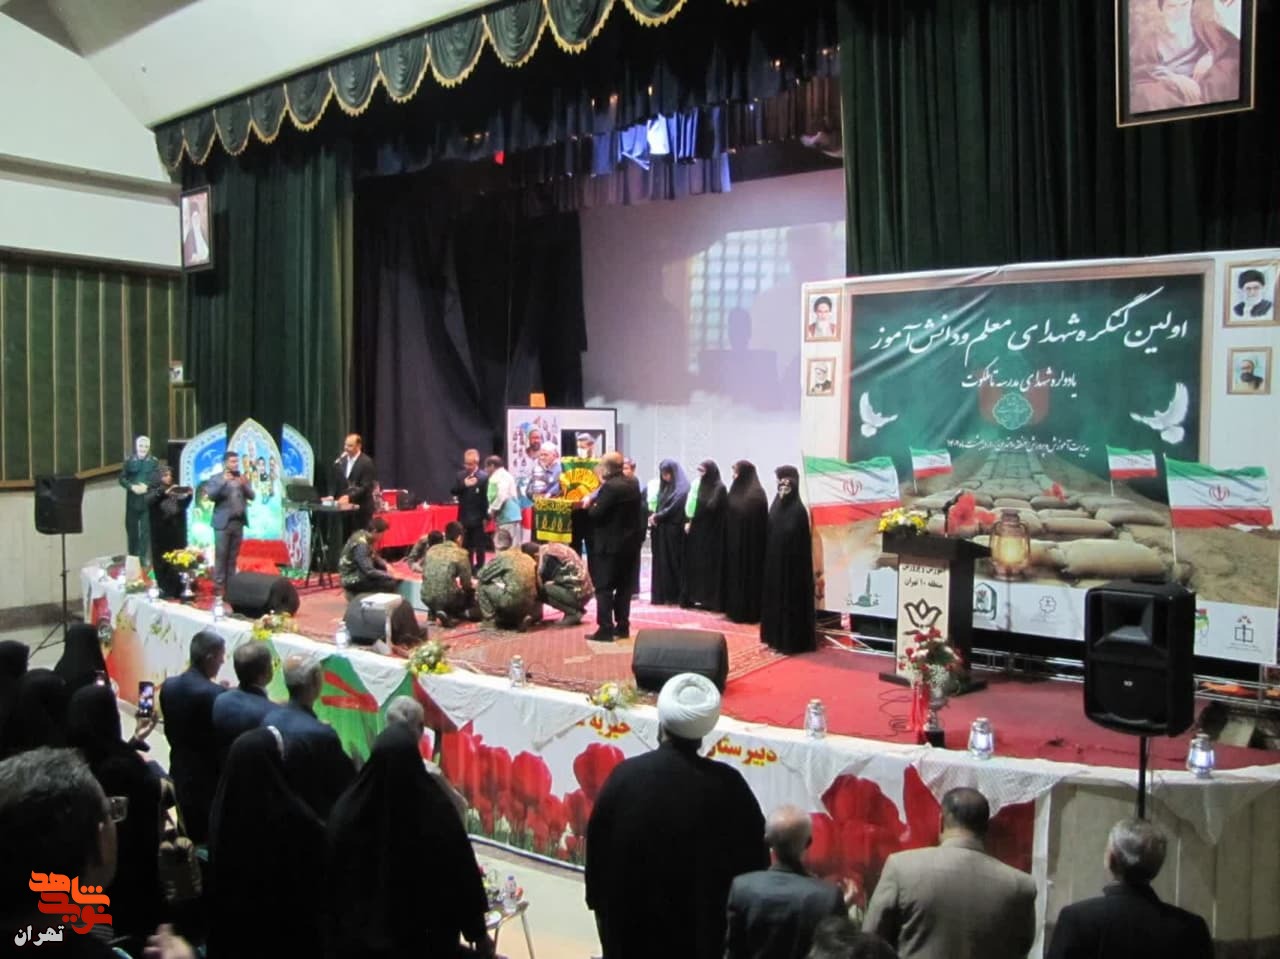 کنگره شهدای معلم و دانش آموز، در آموزش و پرورش منطقه 10 برگزار شد